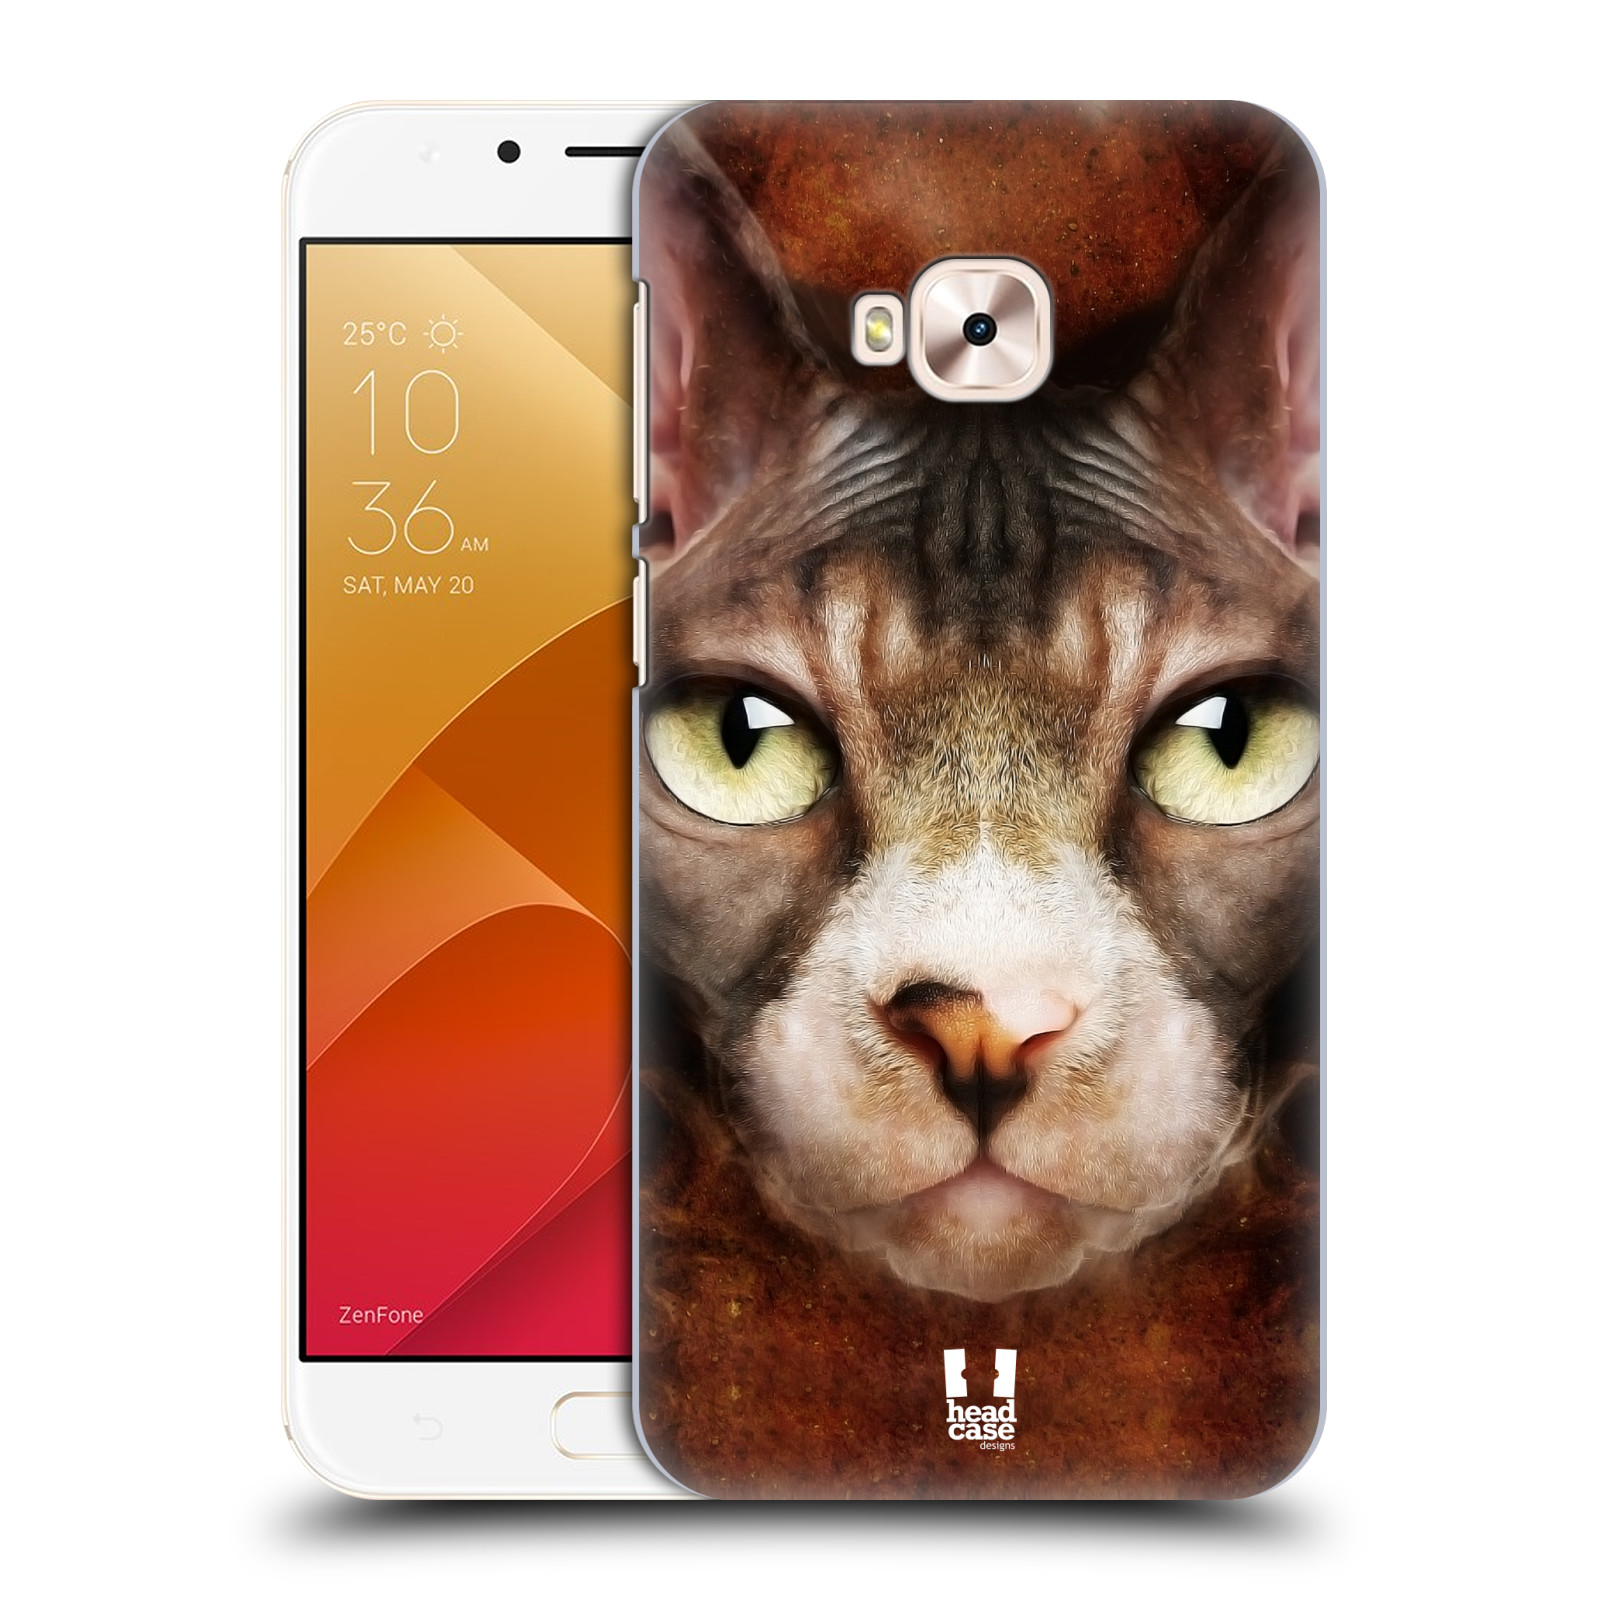 HEAD CASE plastový obal na mobil Asus Zenfone 4 Selfie Pro ZD552KL vzor Zvířecí tváře kočka sphynx